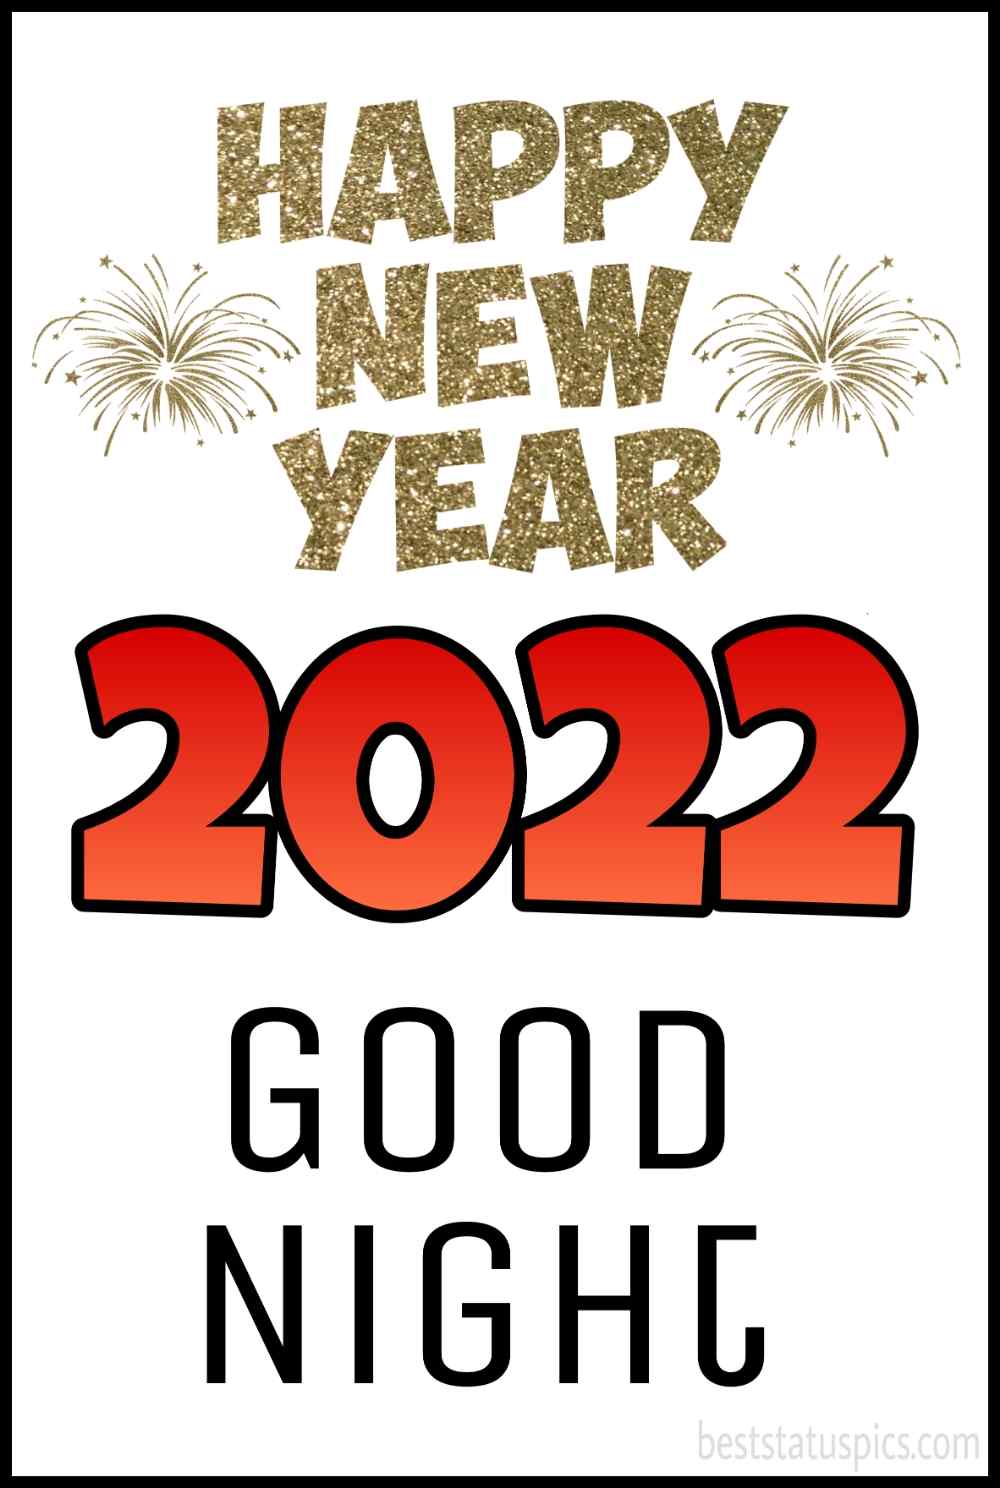 Felice anno nuovo 2022 e auguri di buona notte, biglietto ed ecard per amici e familiari